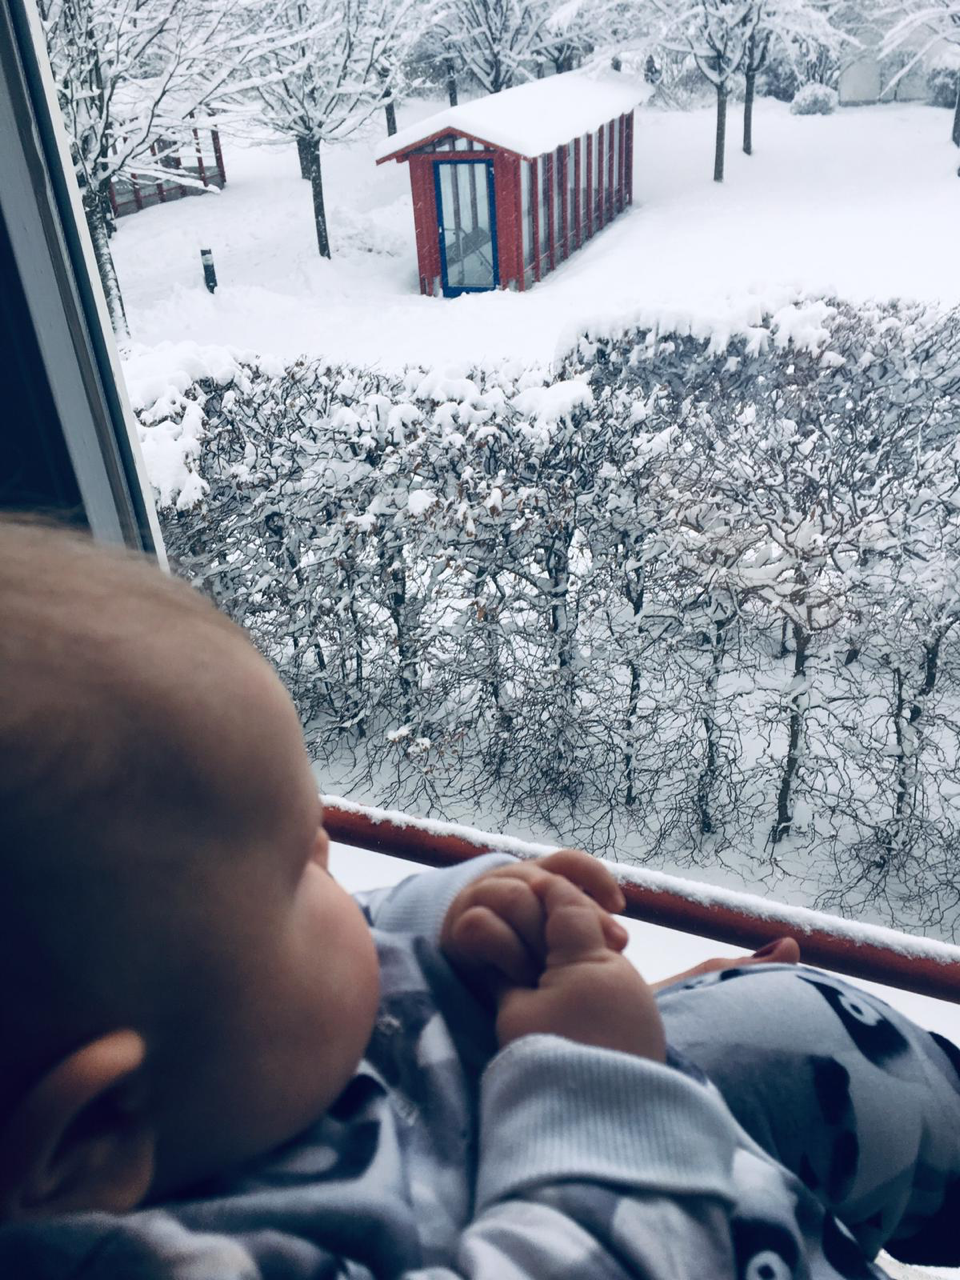 Unser Baby schaut aus dem Fenster in den Schnee